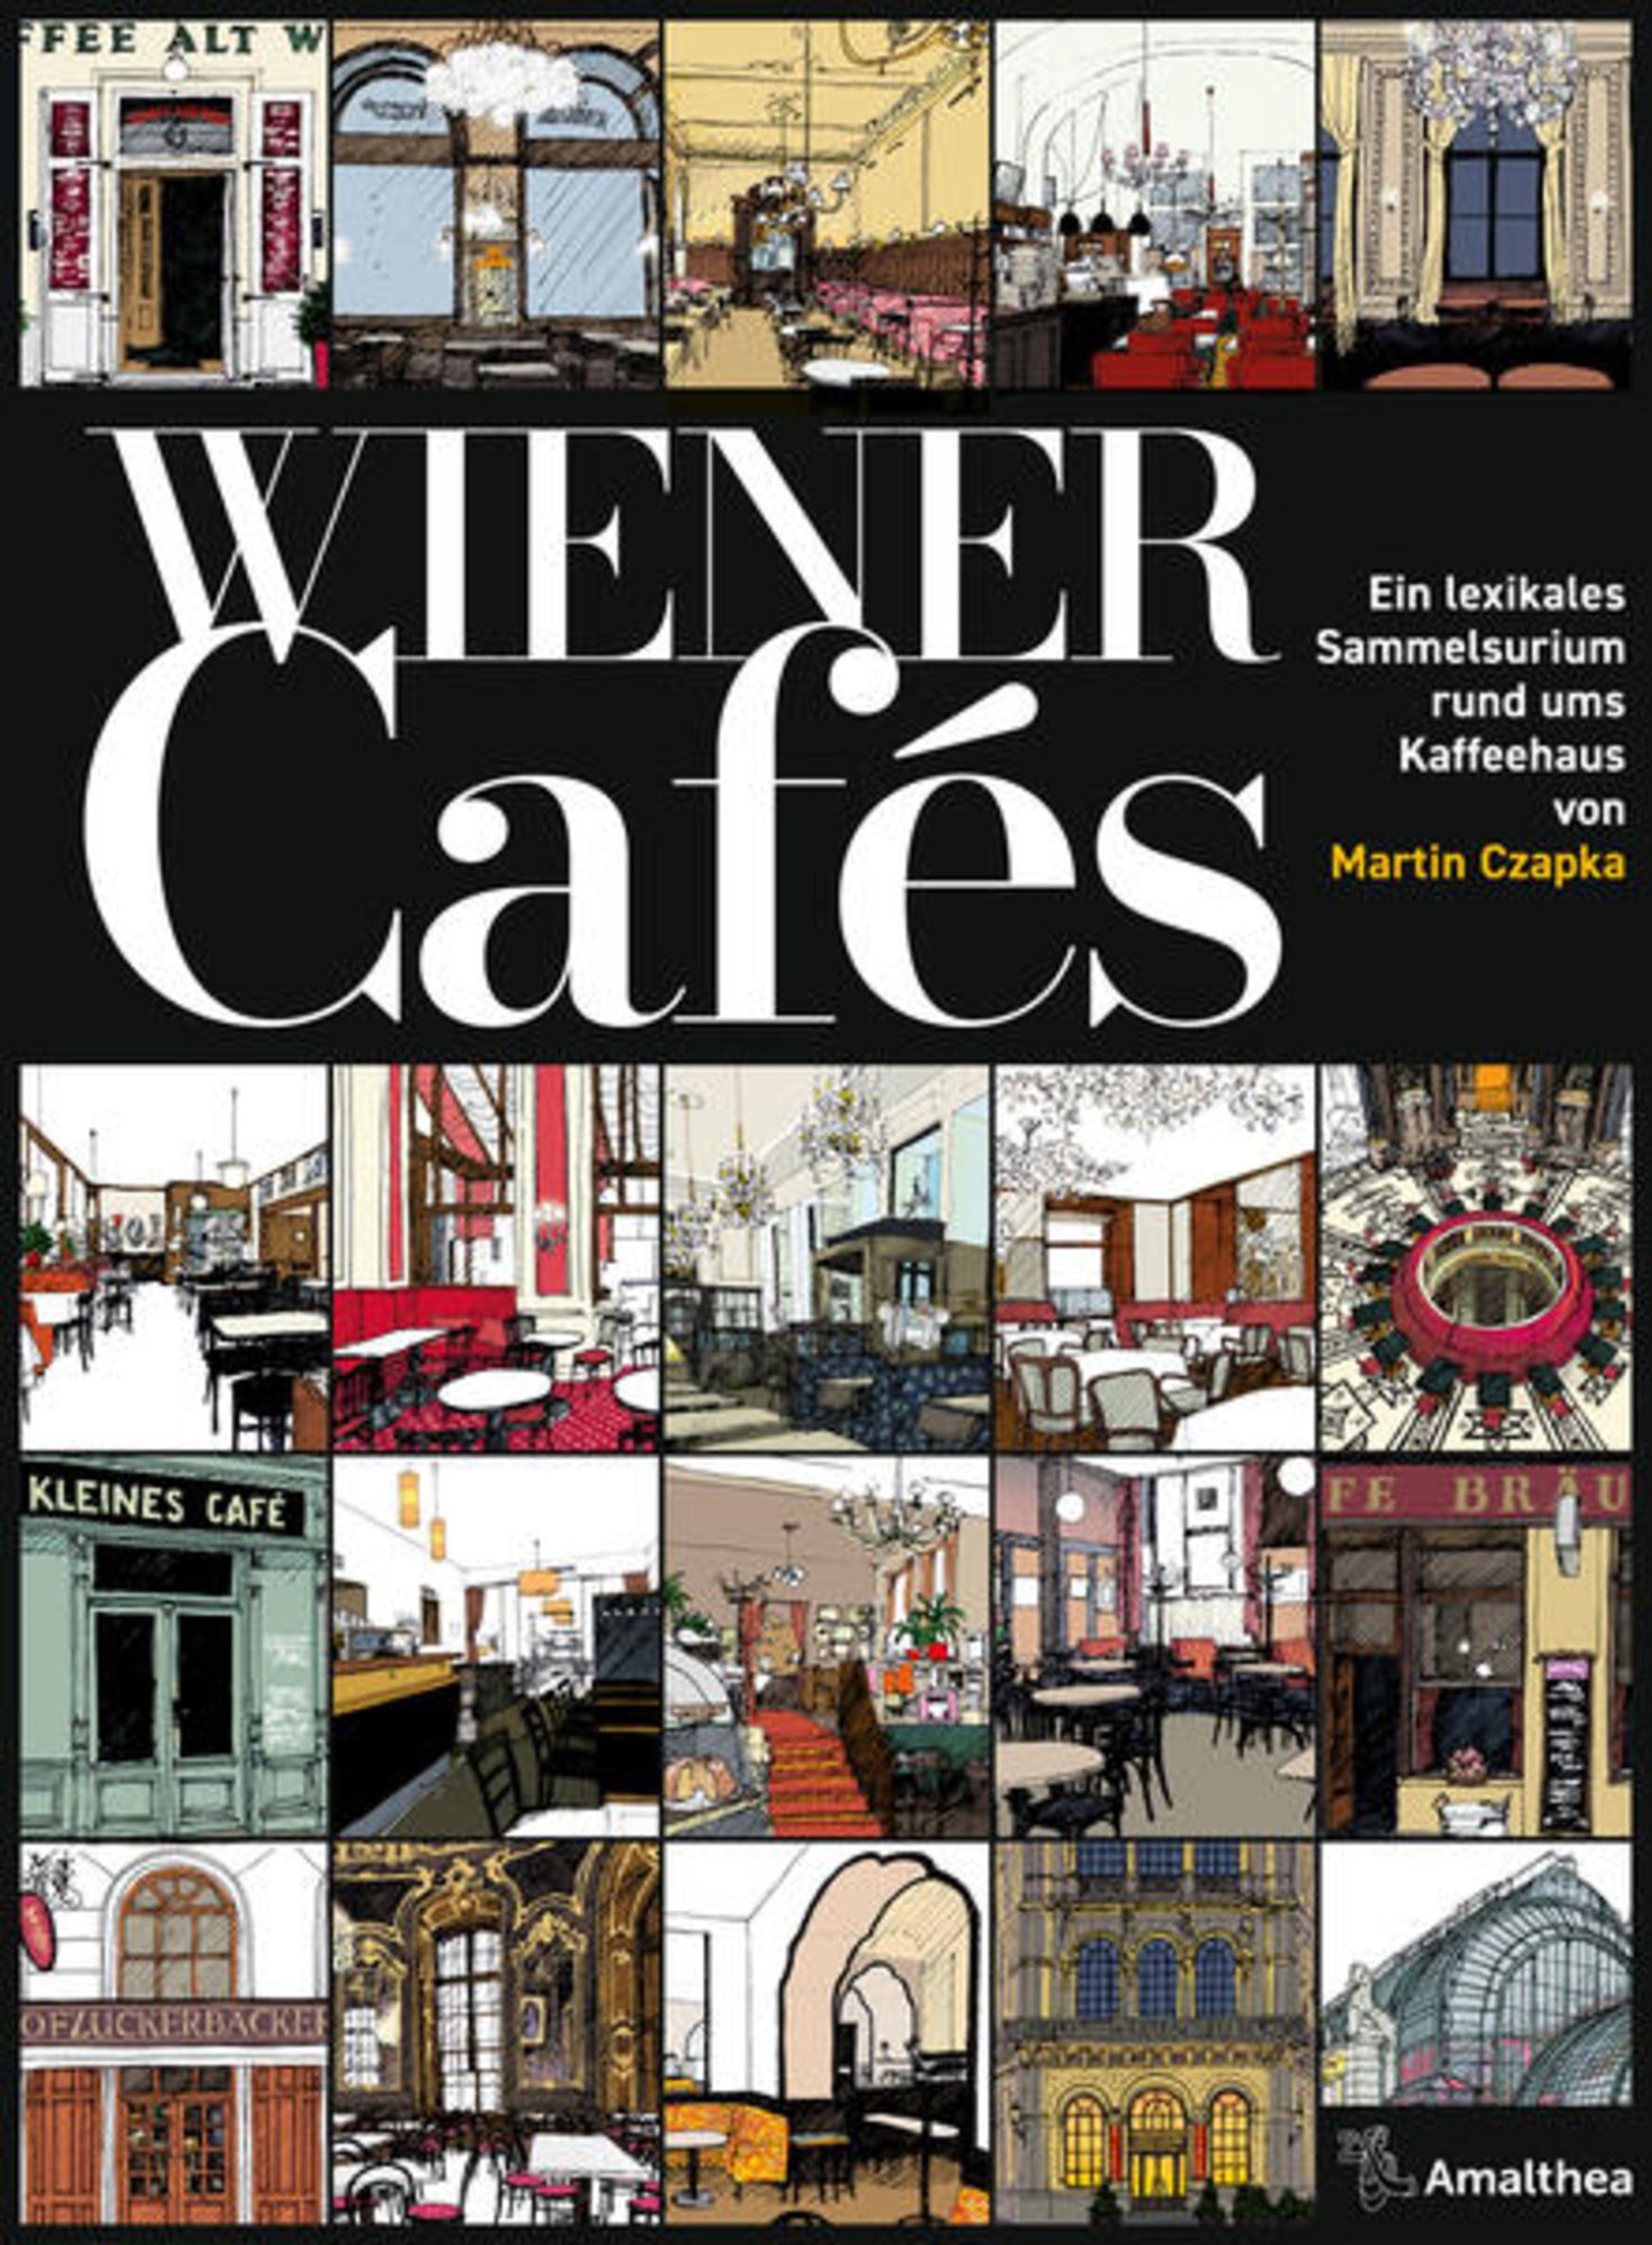 Czapka, Martin - Wiener Cafés